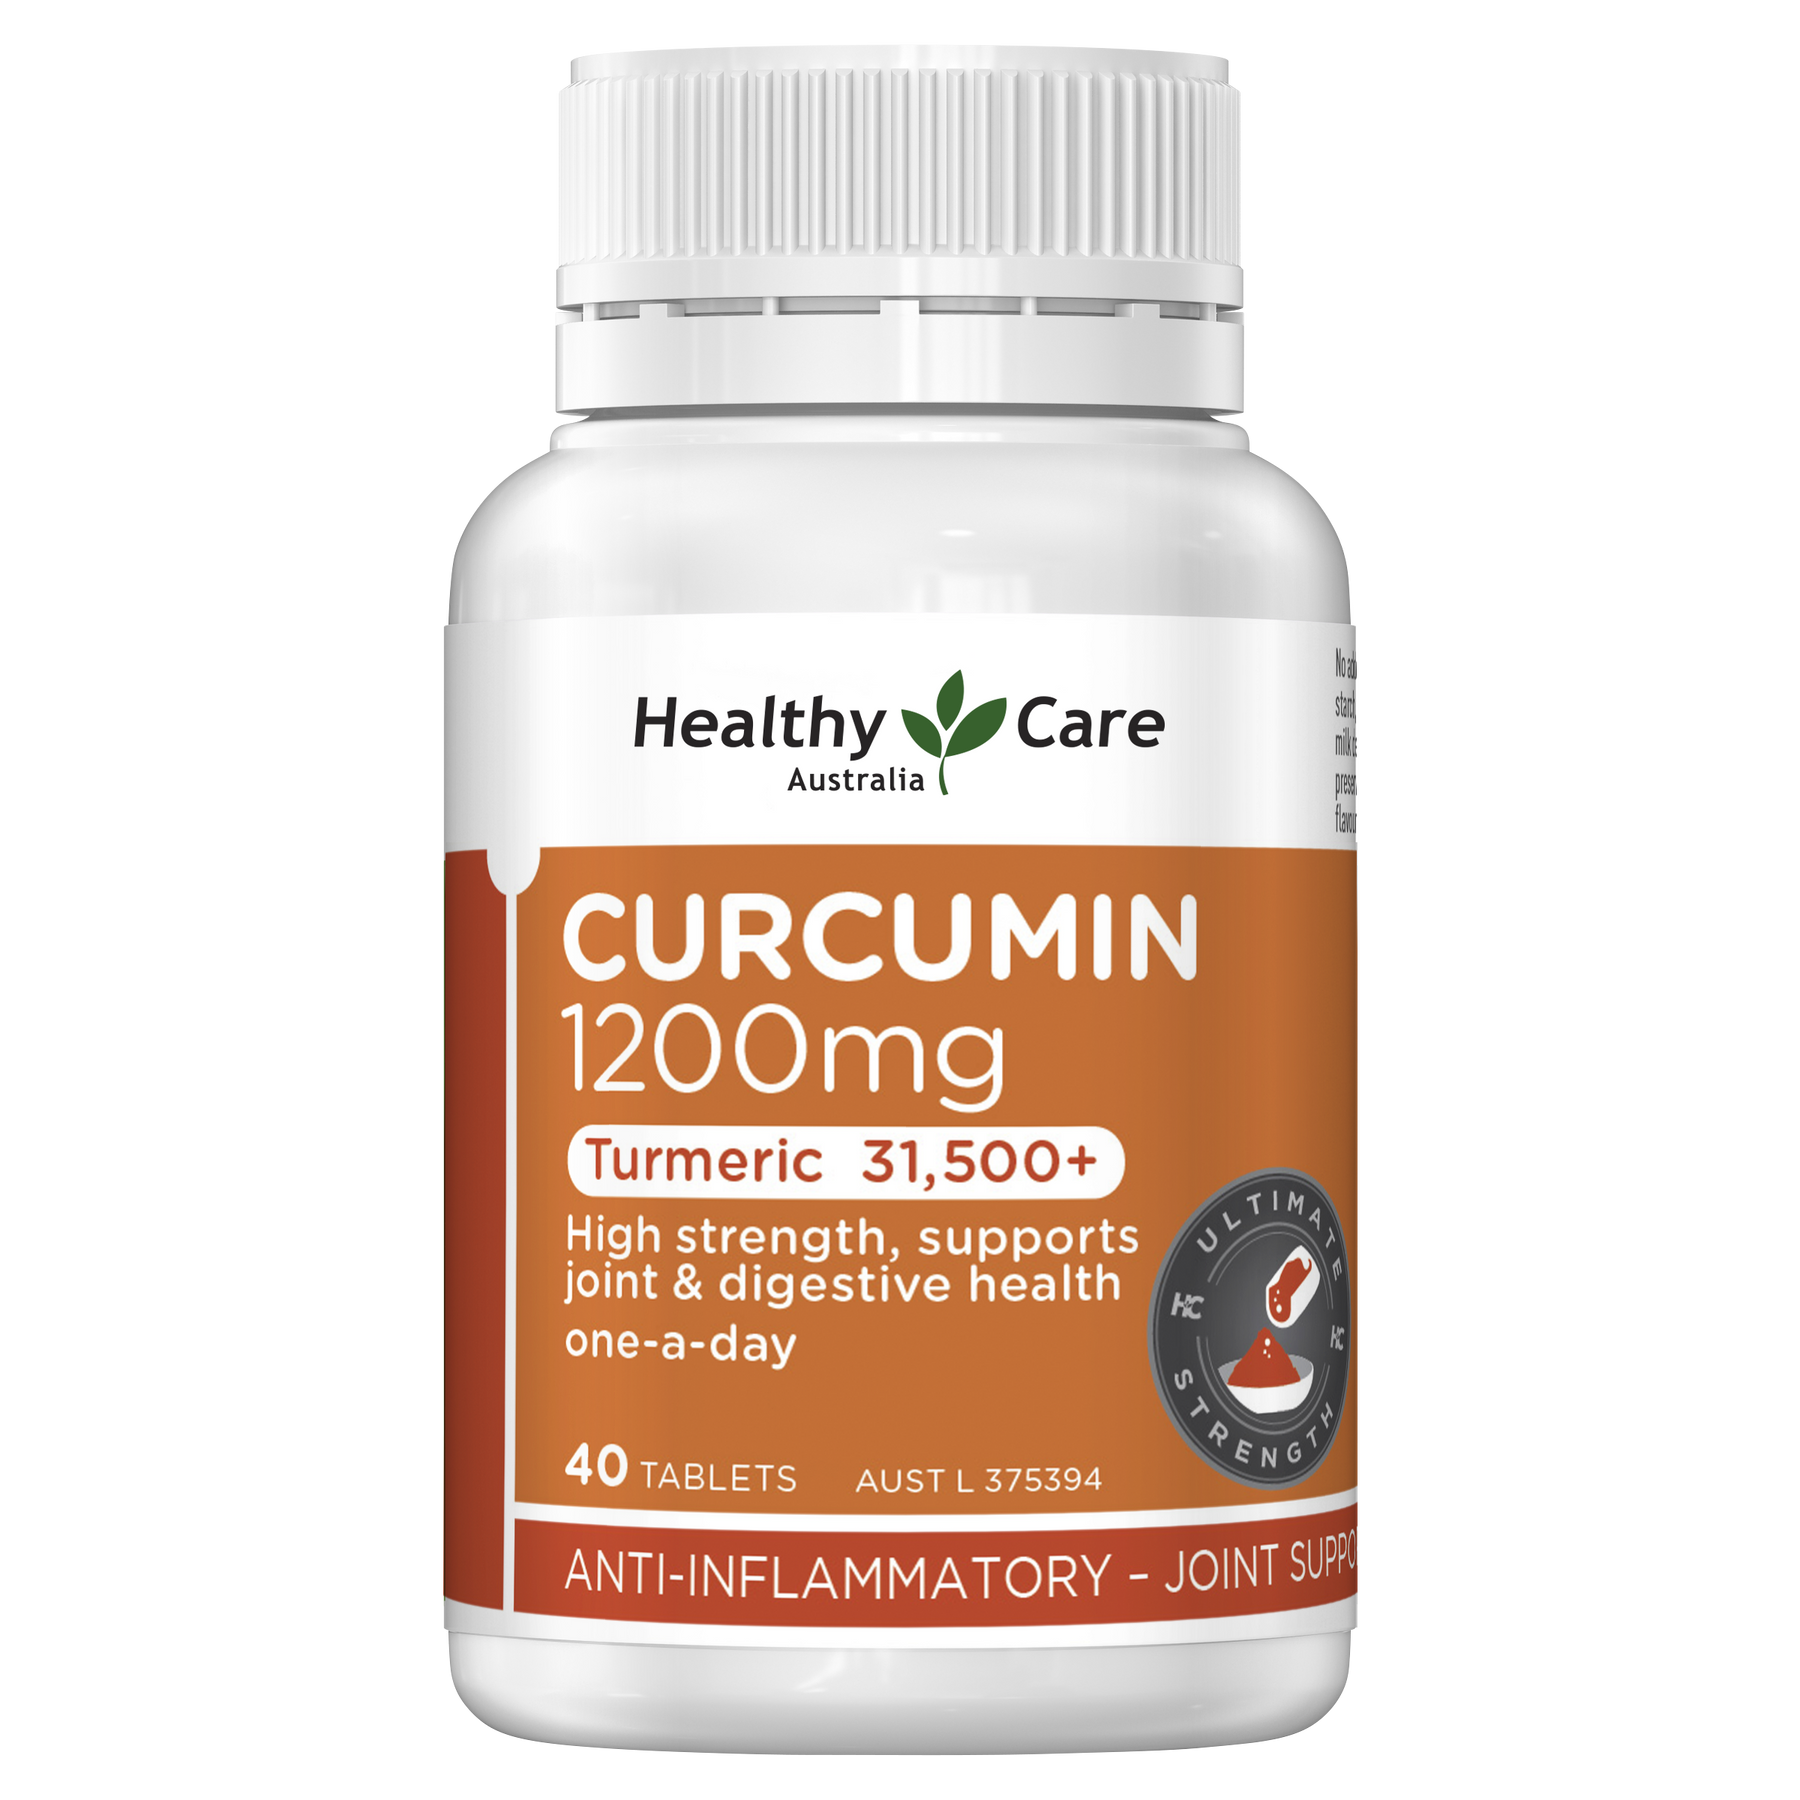 Healthy Care Curcumin 1200mg 40 Tablets